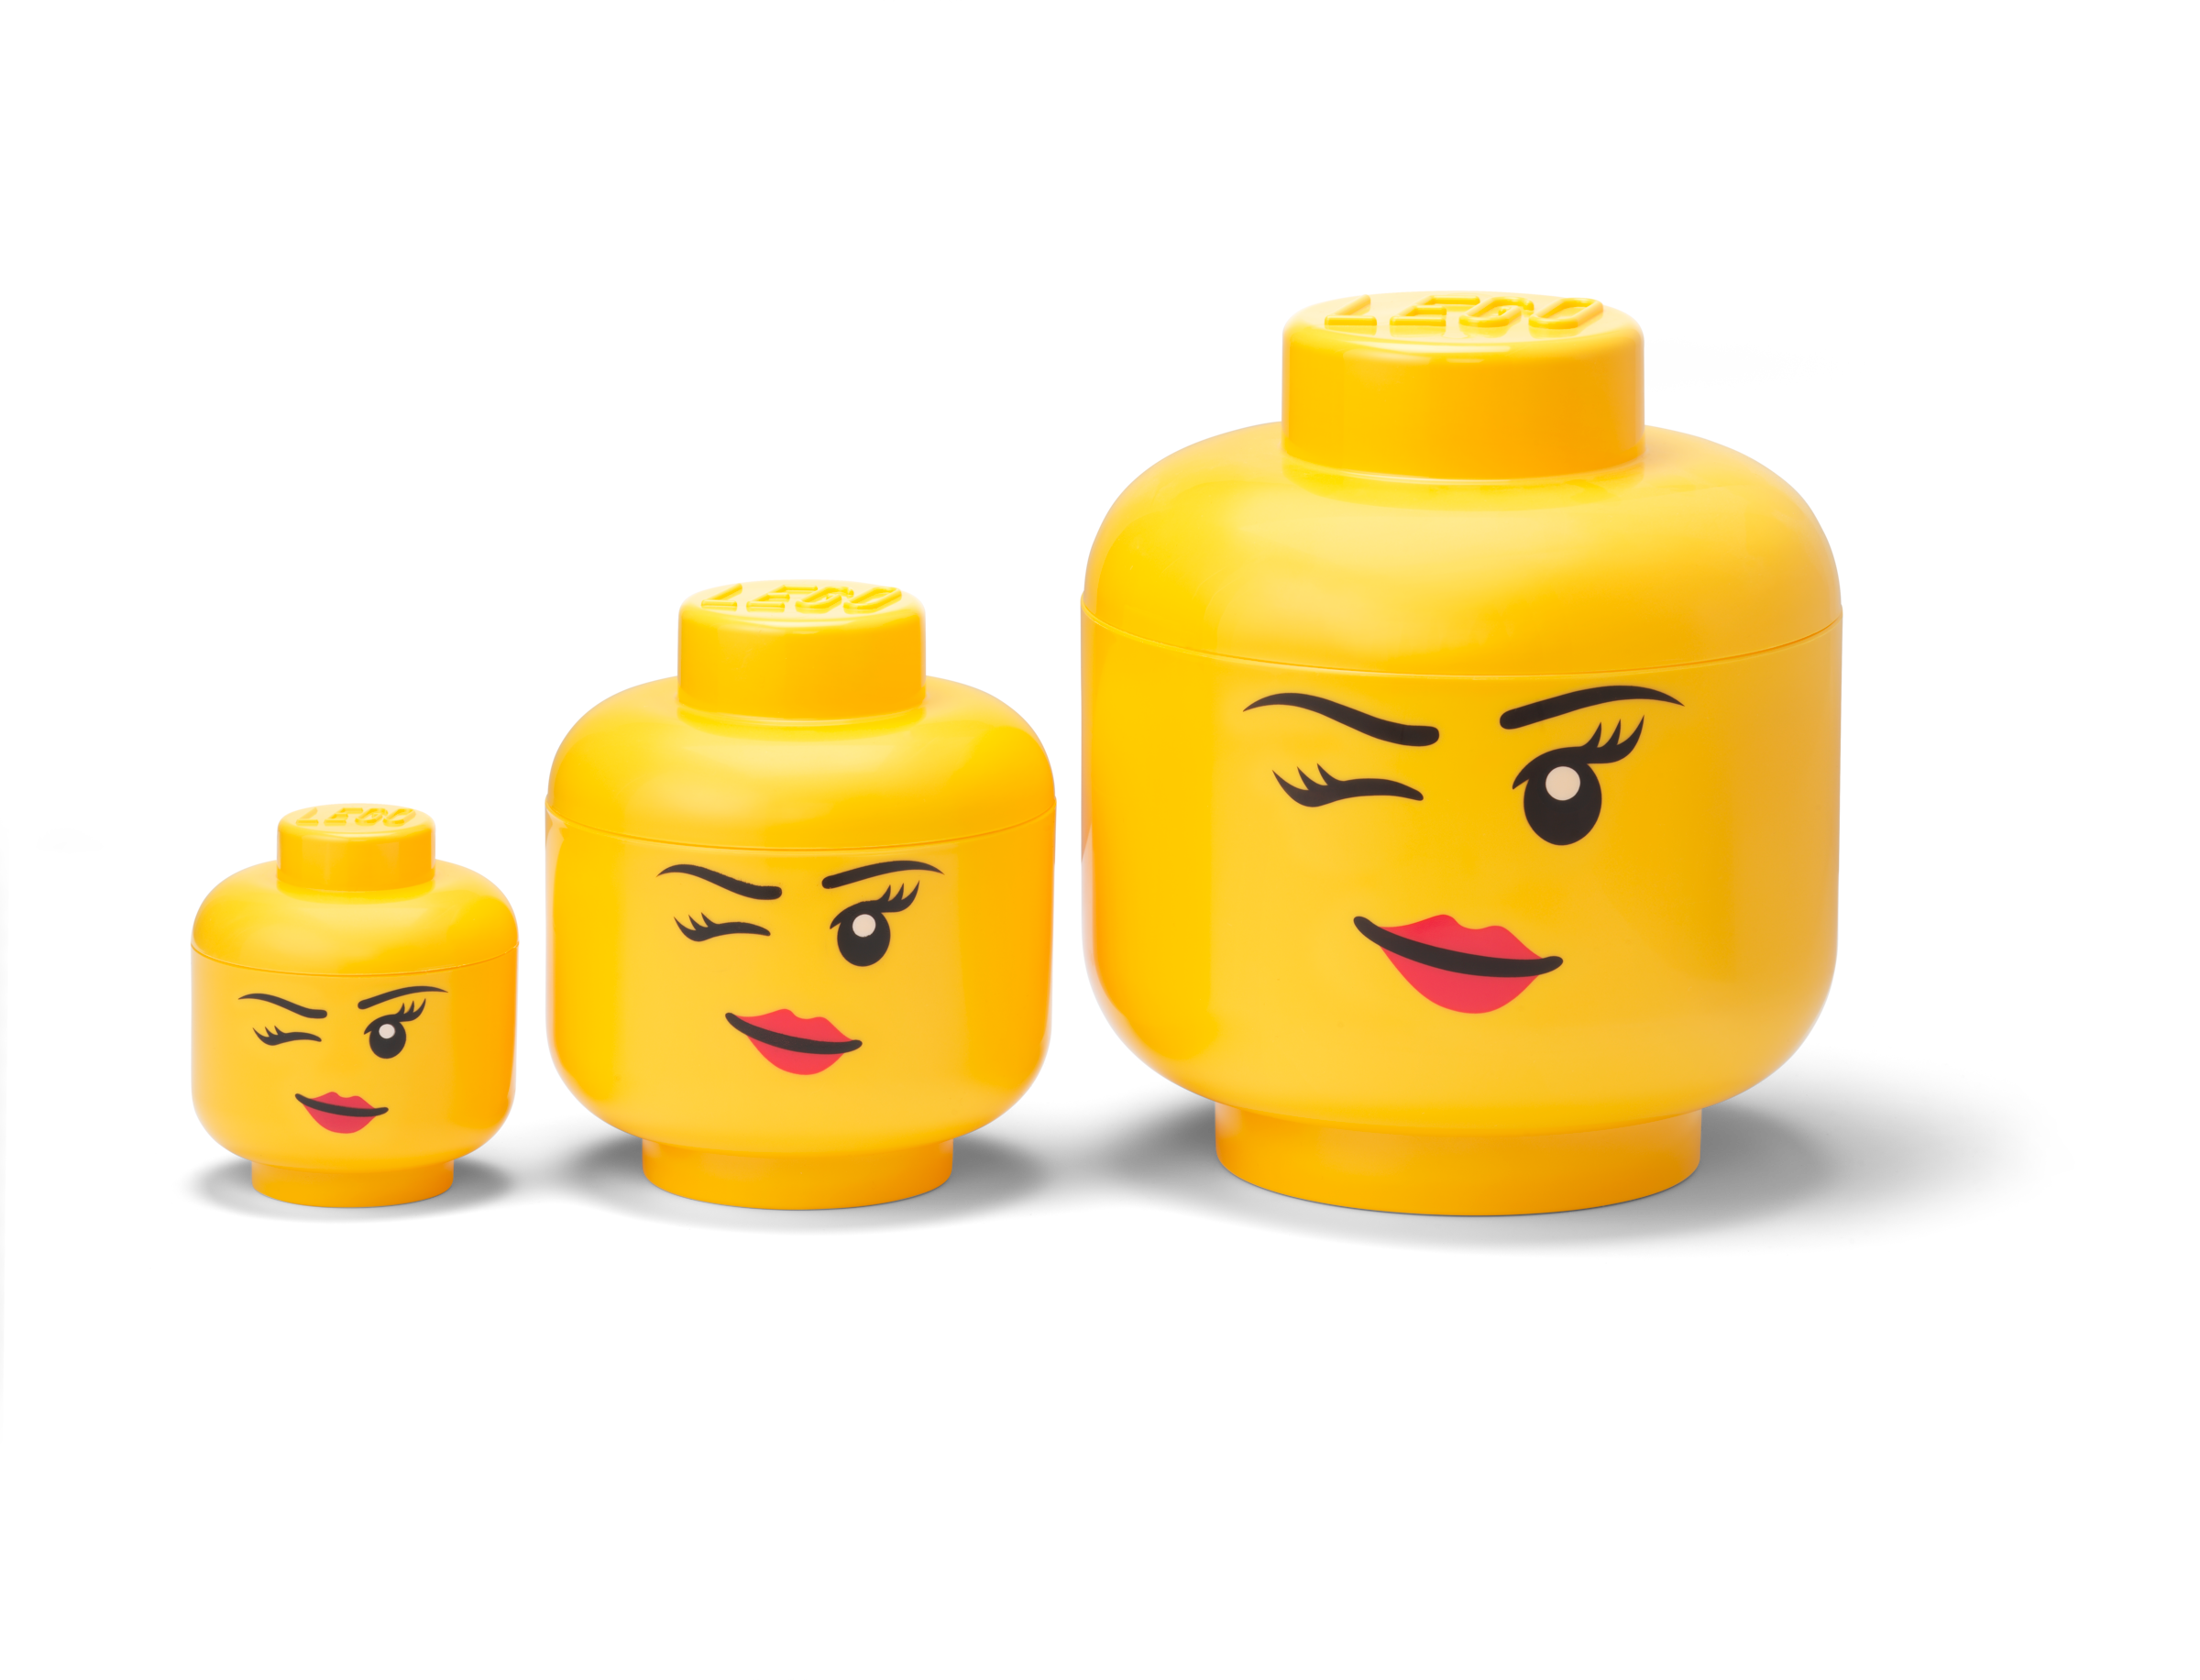 Lego Storage Storage Box - Small - Head- 19 cm - Wink